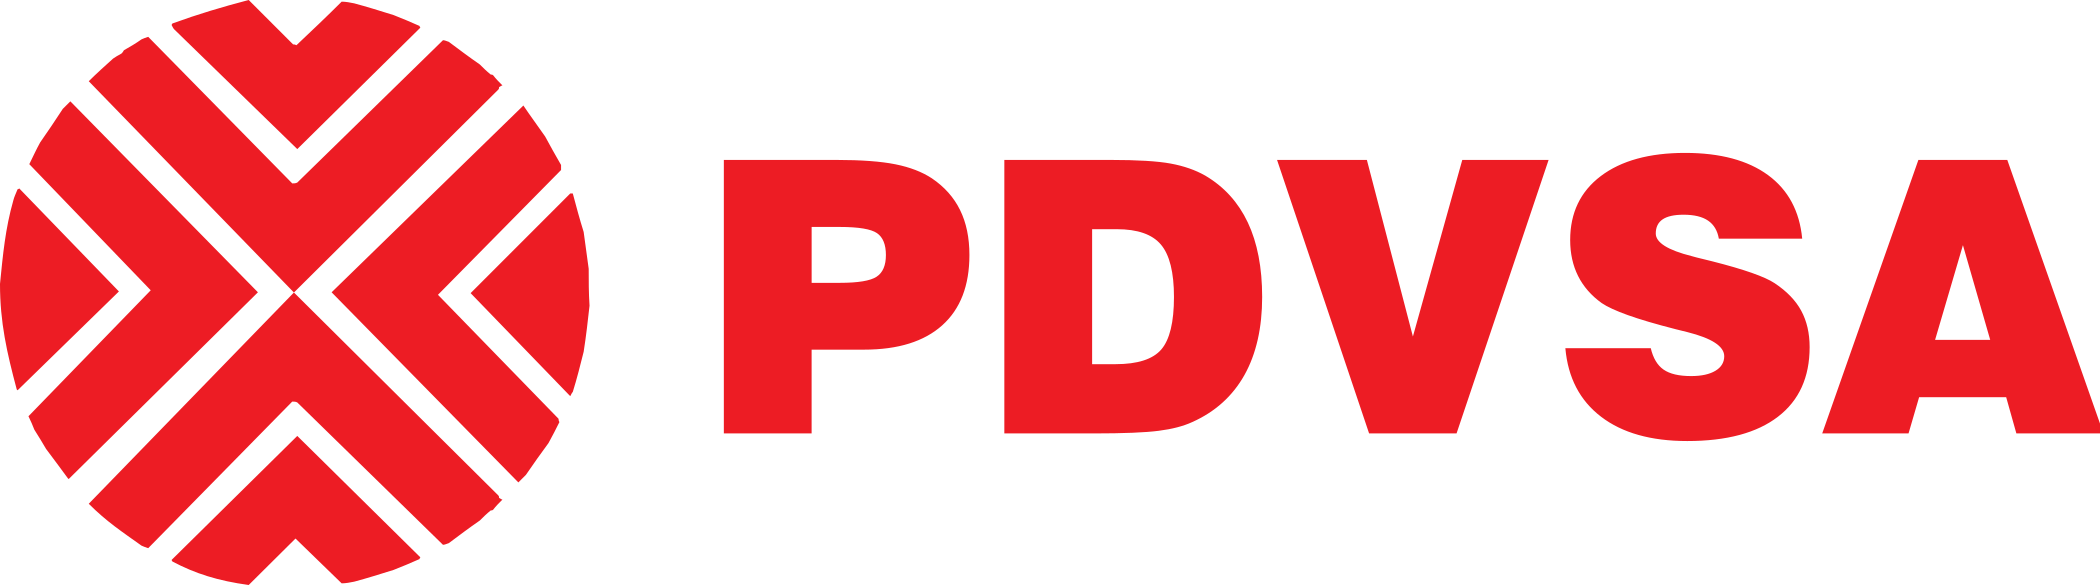 PDVSA logo.